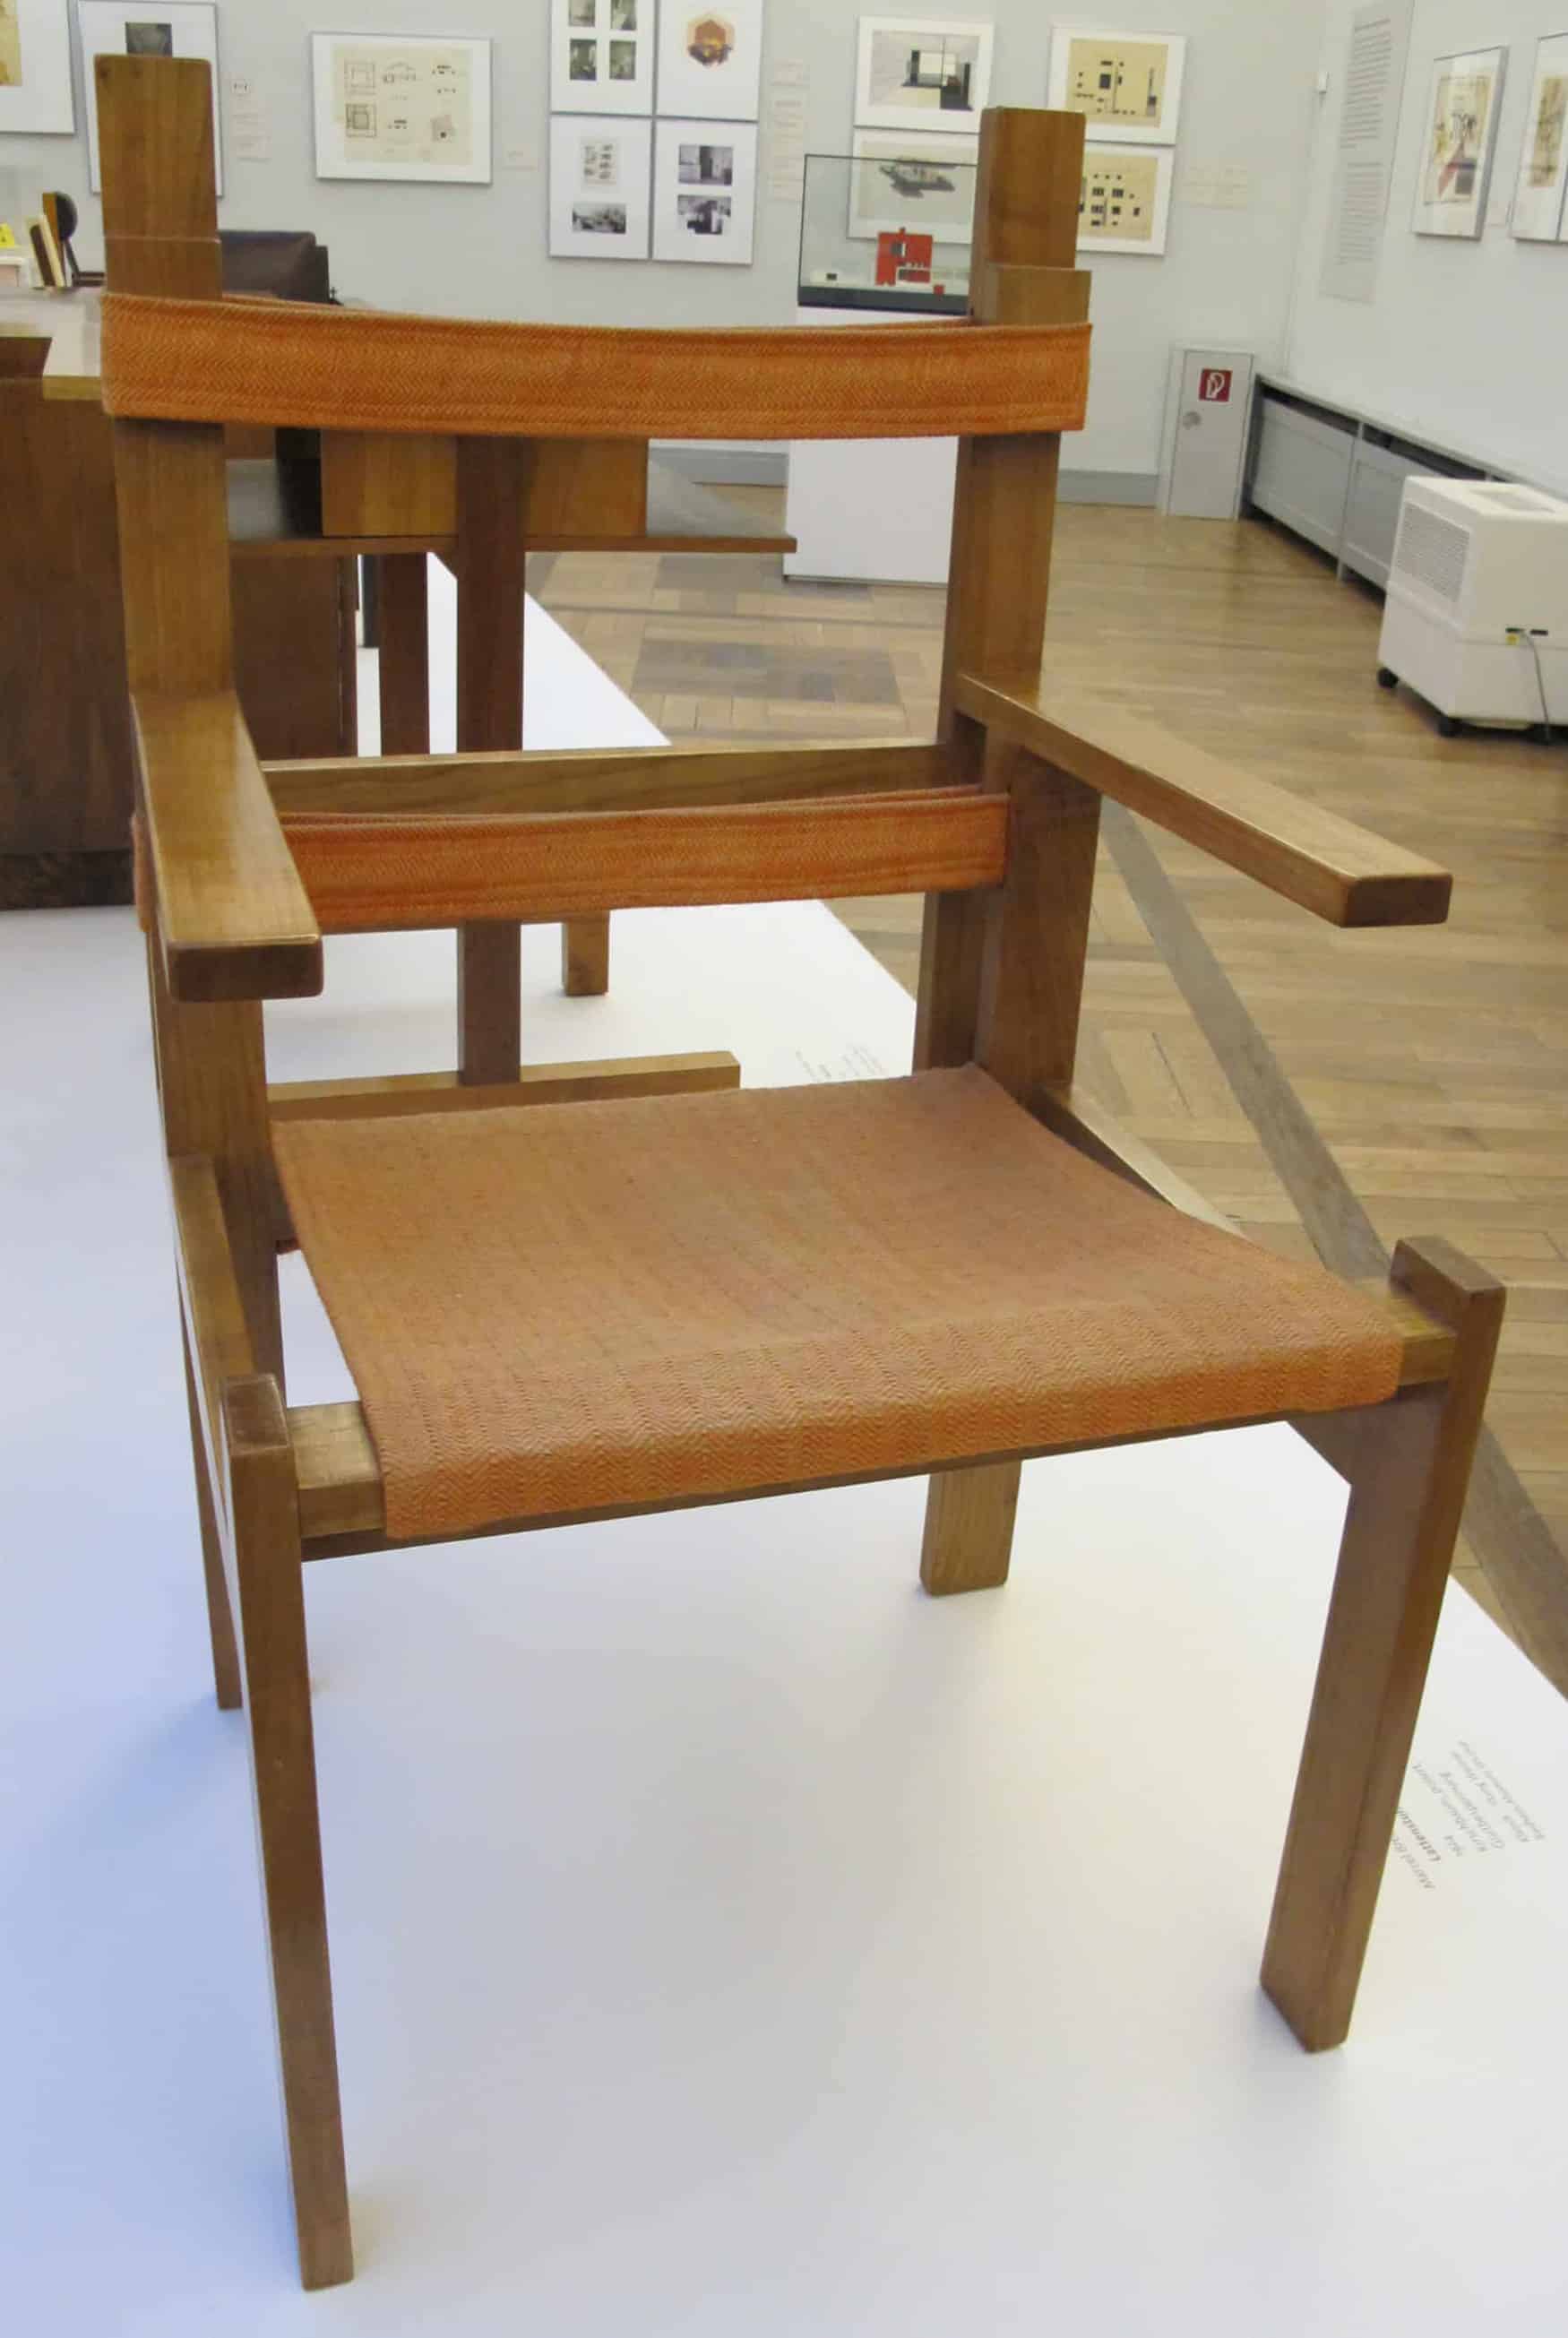 Archivbild. Ein Stuhl, der aus rechtwinklig angeordneten Holzlatten besteht und eine Stofffläche zum Sitzen hat.